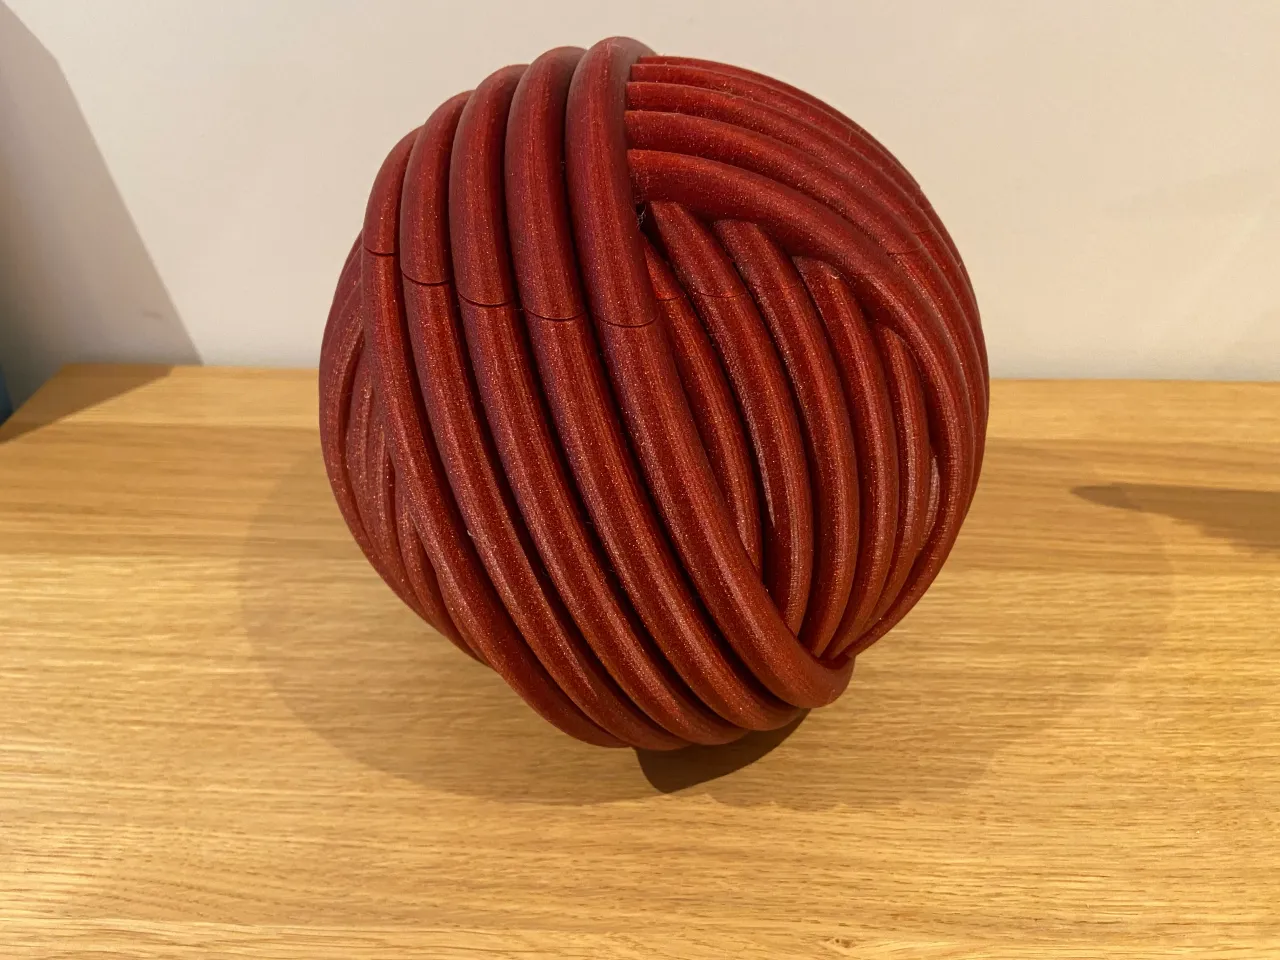 Yarn ball Yarn bowl by Pippa